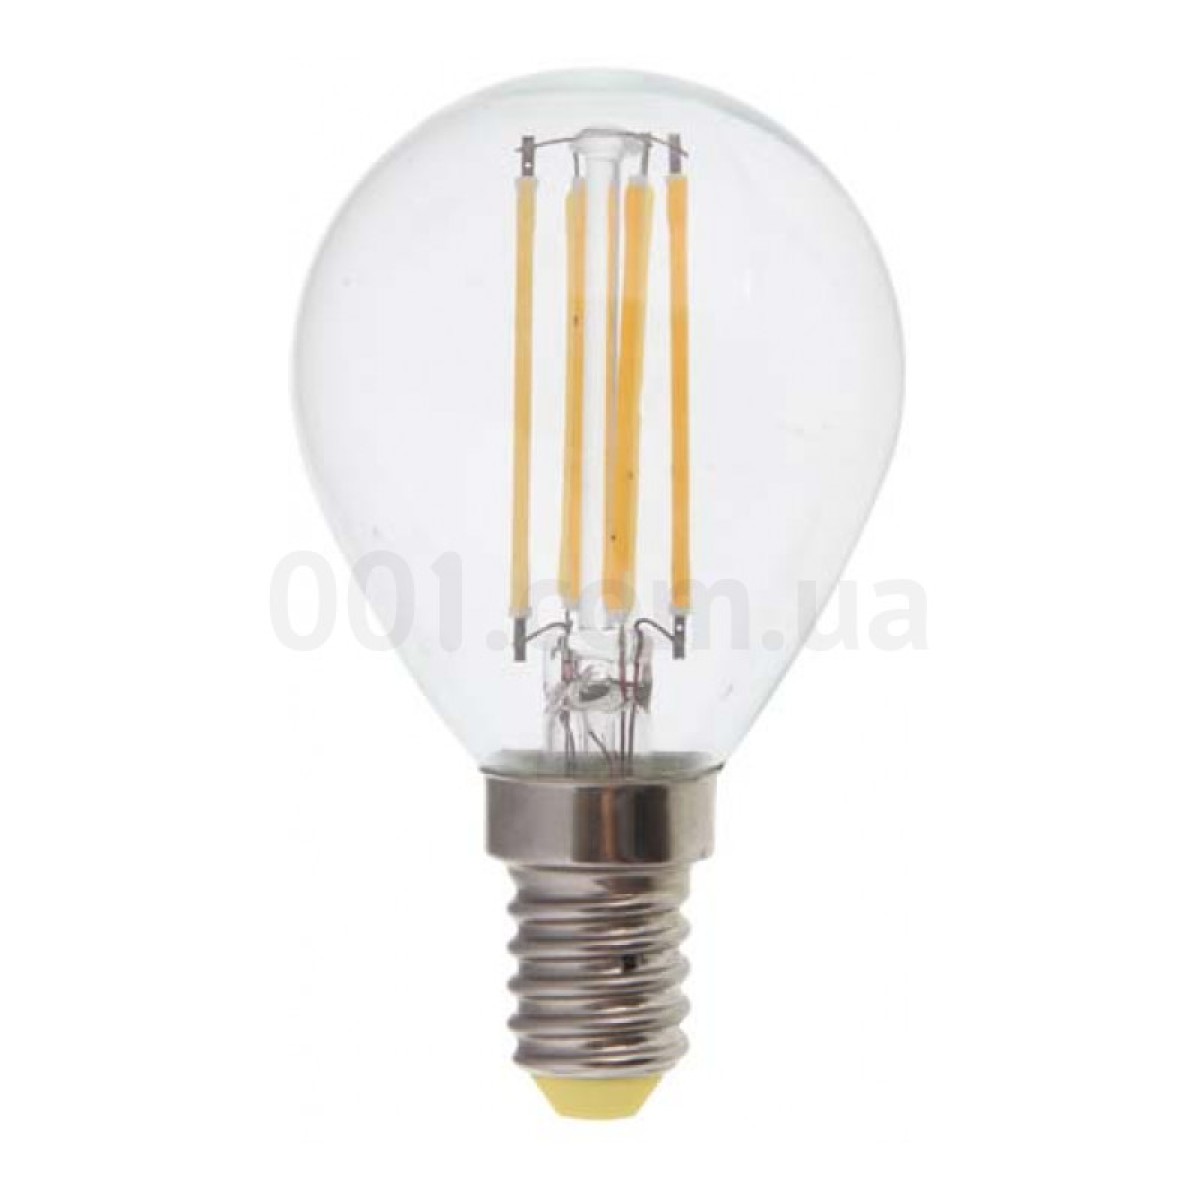 Світлодіодна лампа LB-61 P45 (куля) філамент 4Вт 2700K E14, Feron 256_256.jpg